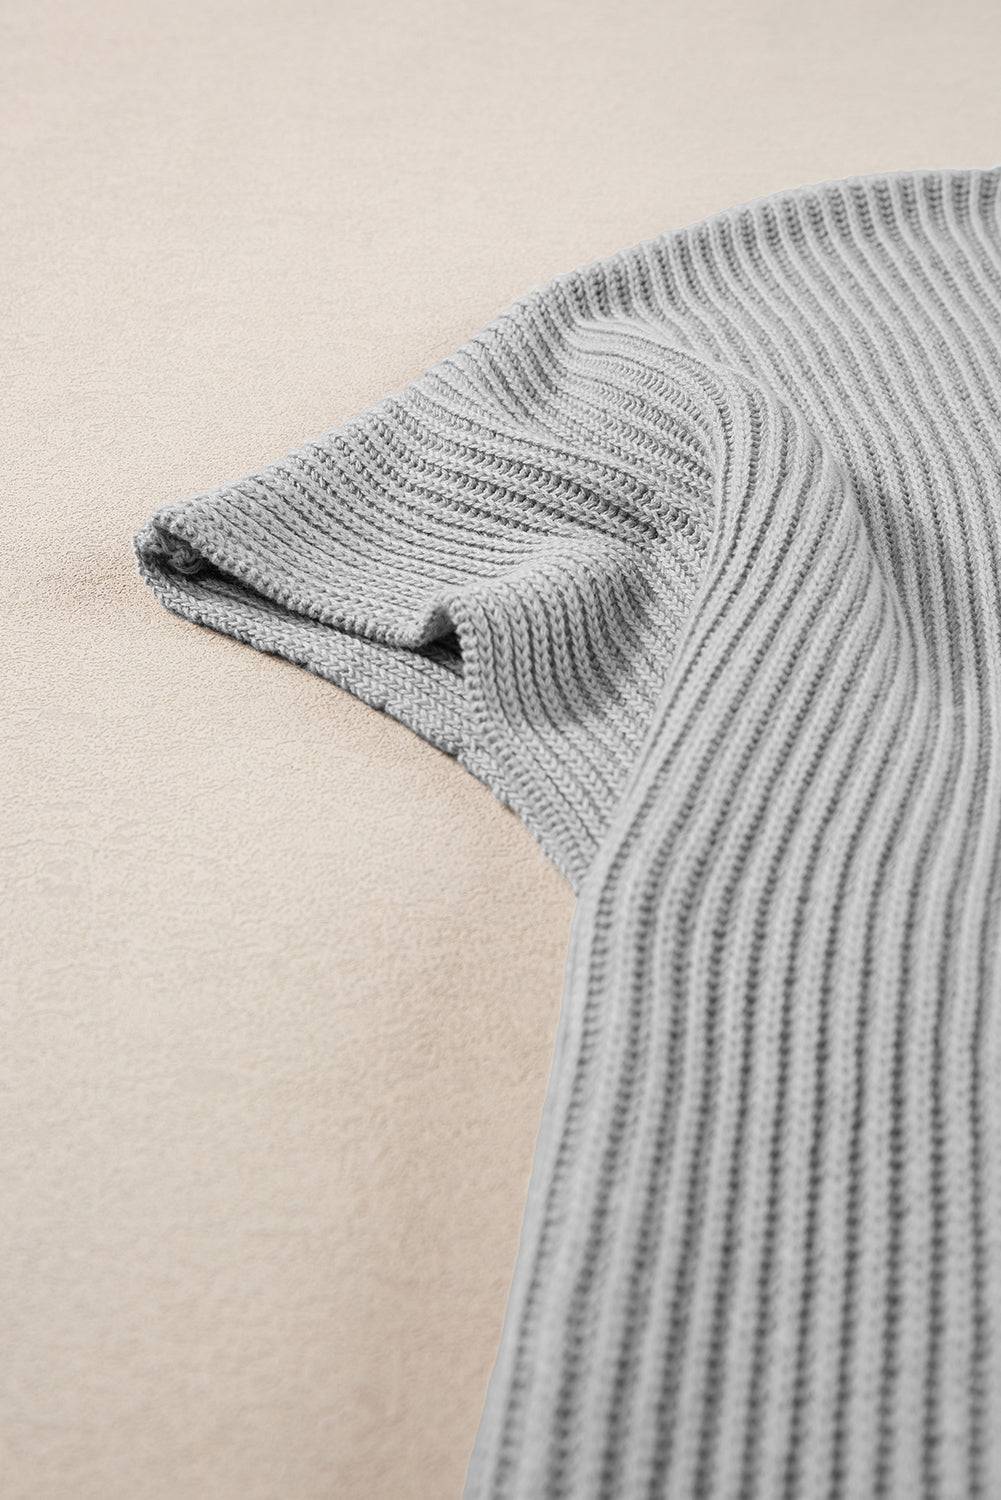 Gray Short Sleeve Side Slit Oversized Sweater